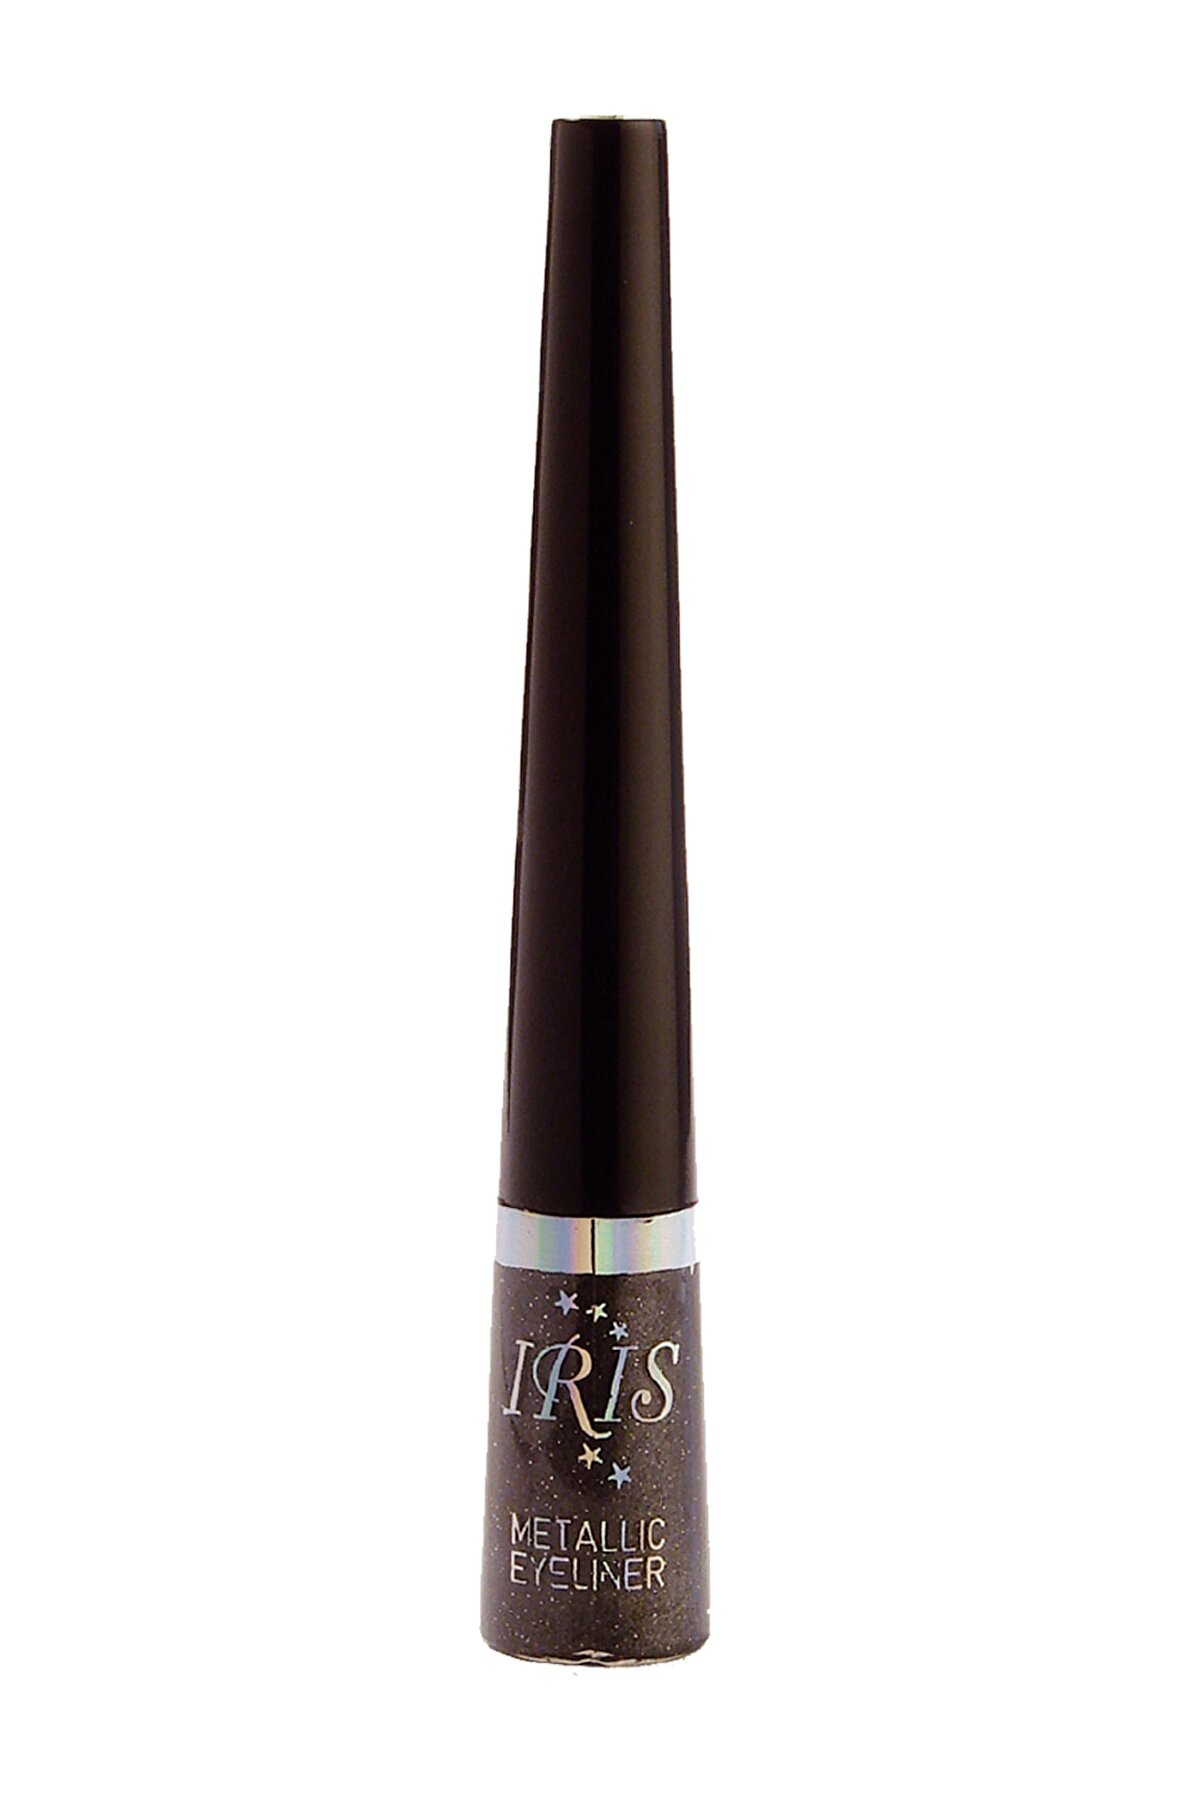 IRIS Metalik Eyeliner - Metallic Eyeliner 003 8699195995530